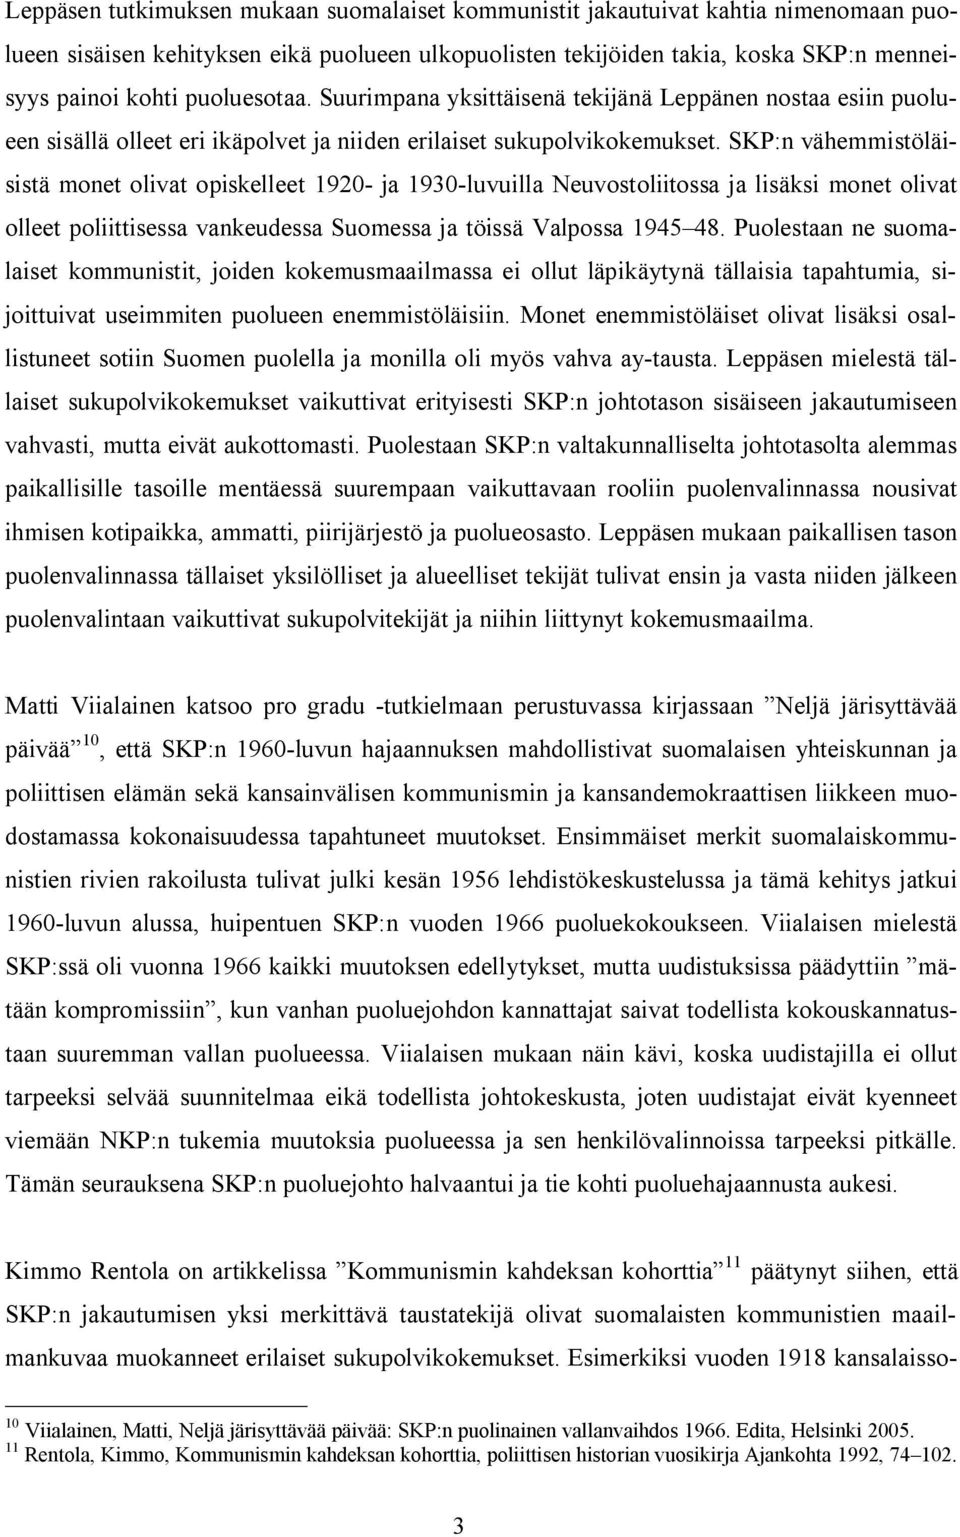 SKP:n vähemmistöläisistä monet olivat opiskelleet 1920- ja 1930-luvuilla Neuvostoliitossa ja lisäksi monet olivat olleet poliittisessa vankeudessa Suomessa ja töissä Valpossa 1945 48.